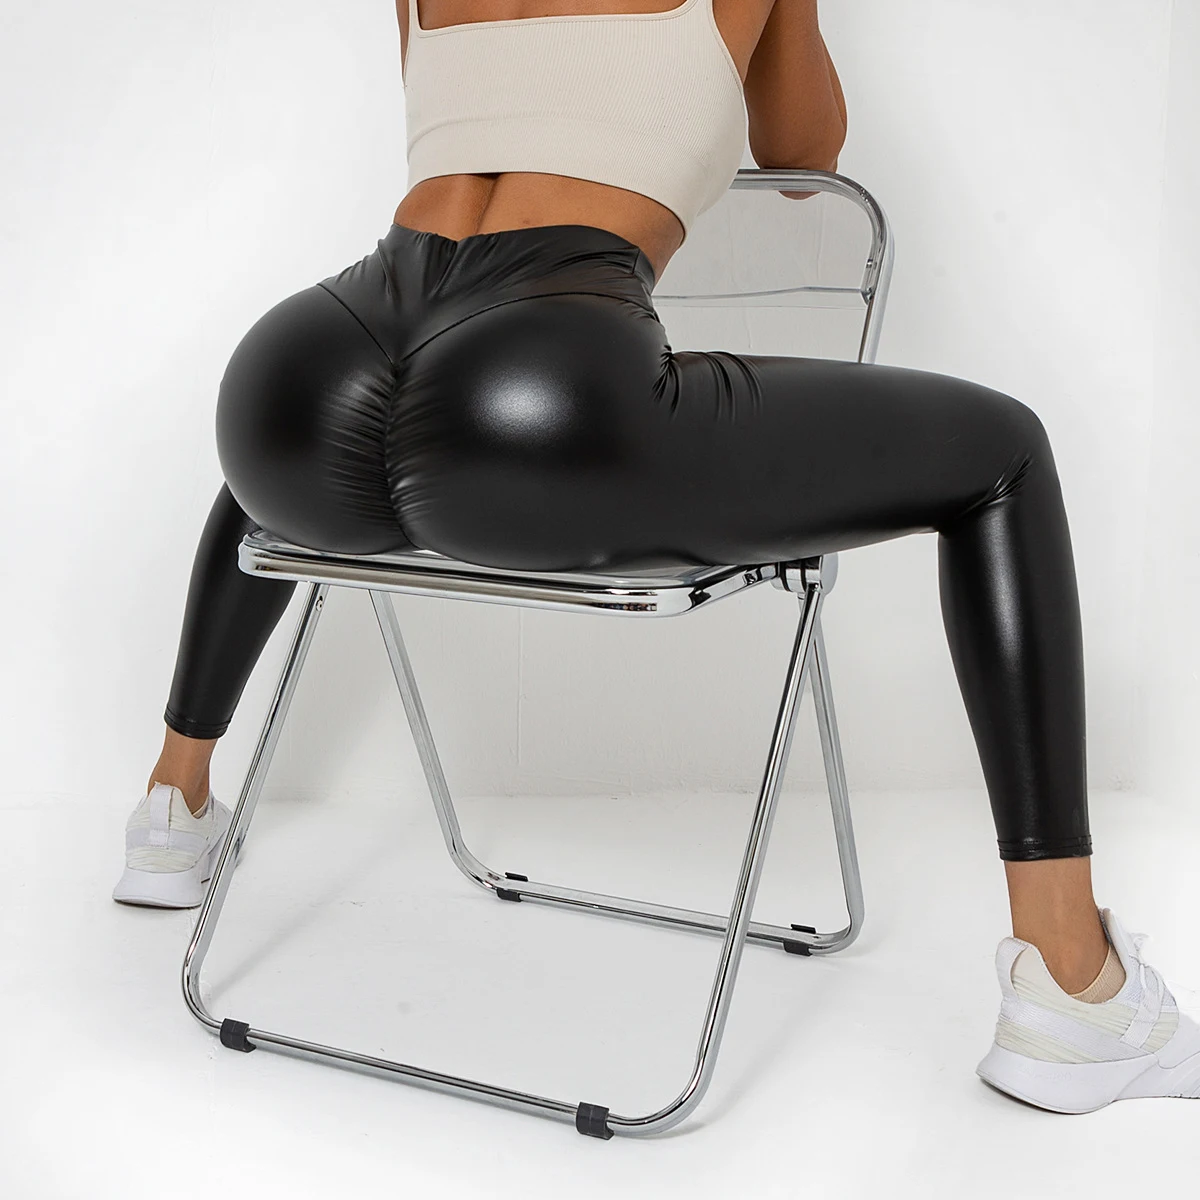 Black flexible ass